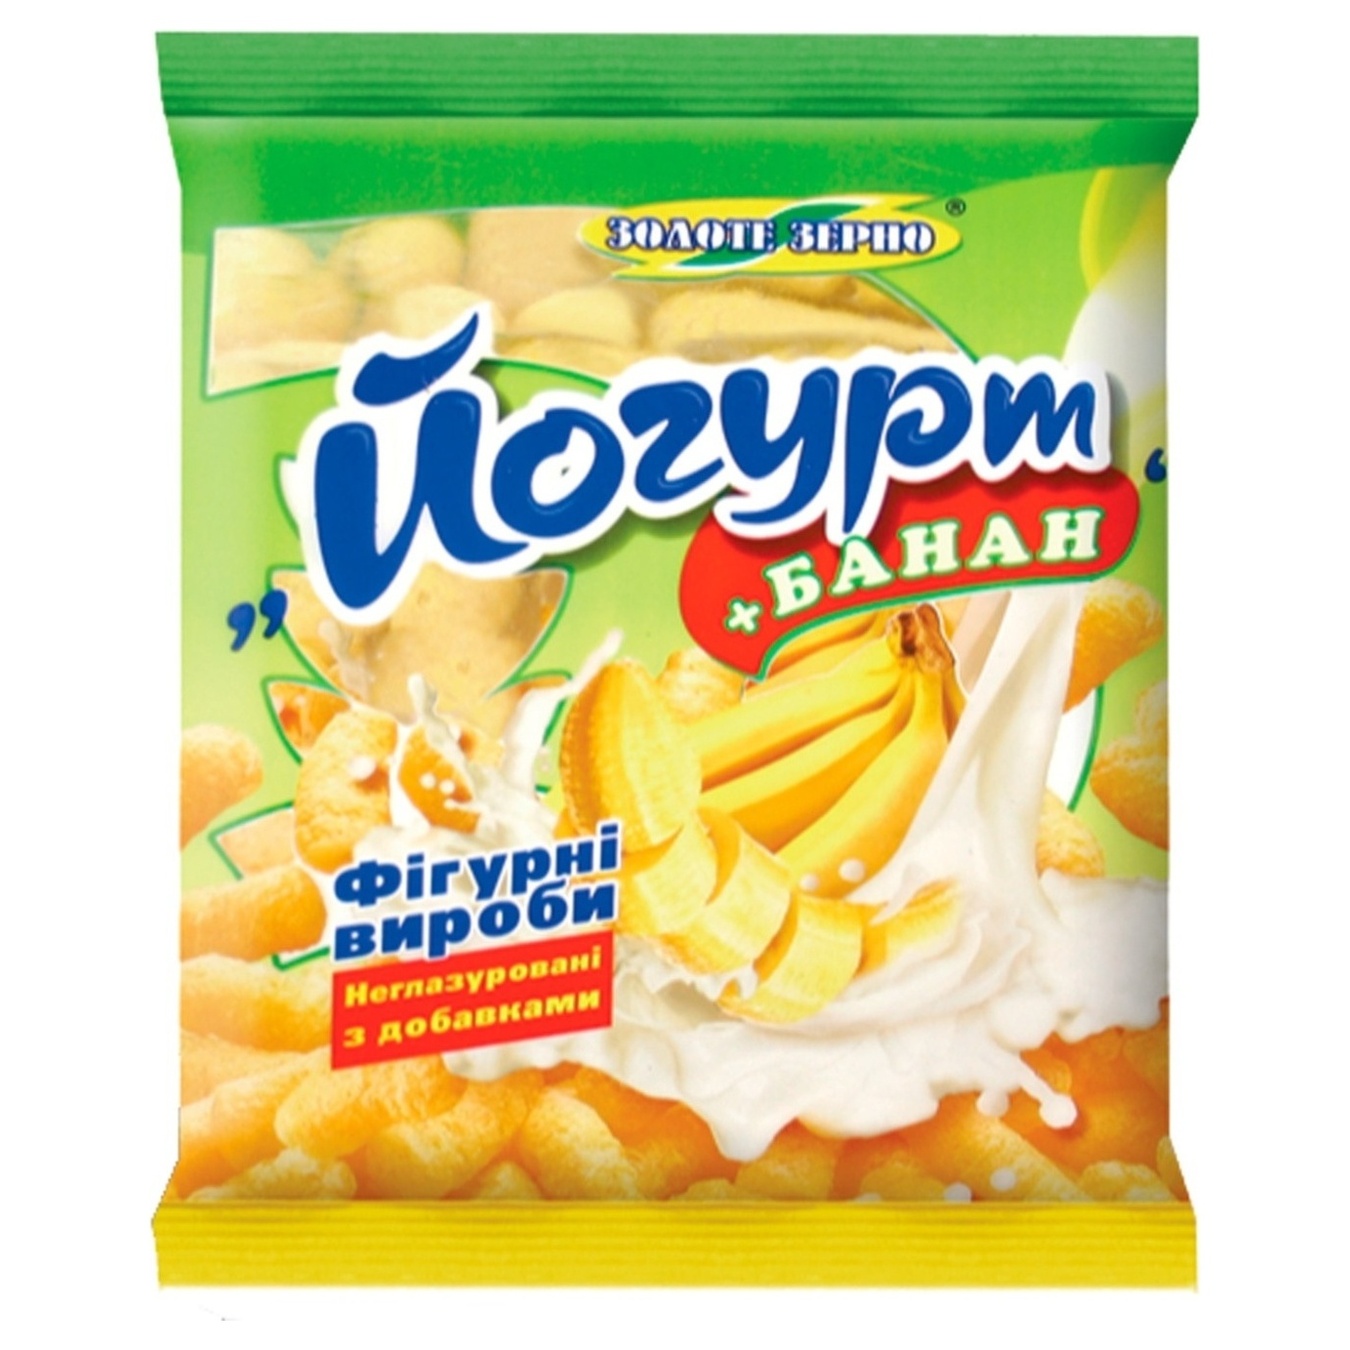 Corn sticks Golden grain yogurt-banana 60g